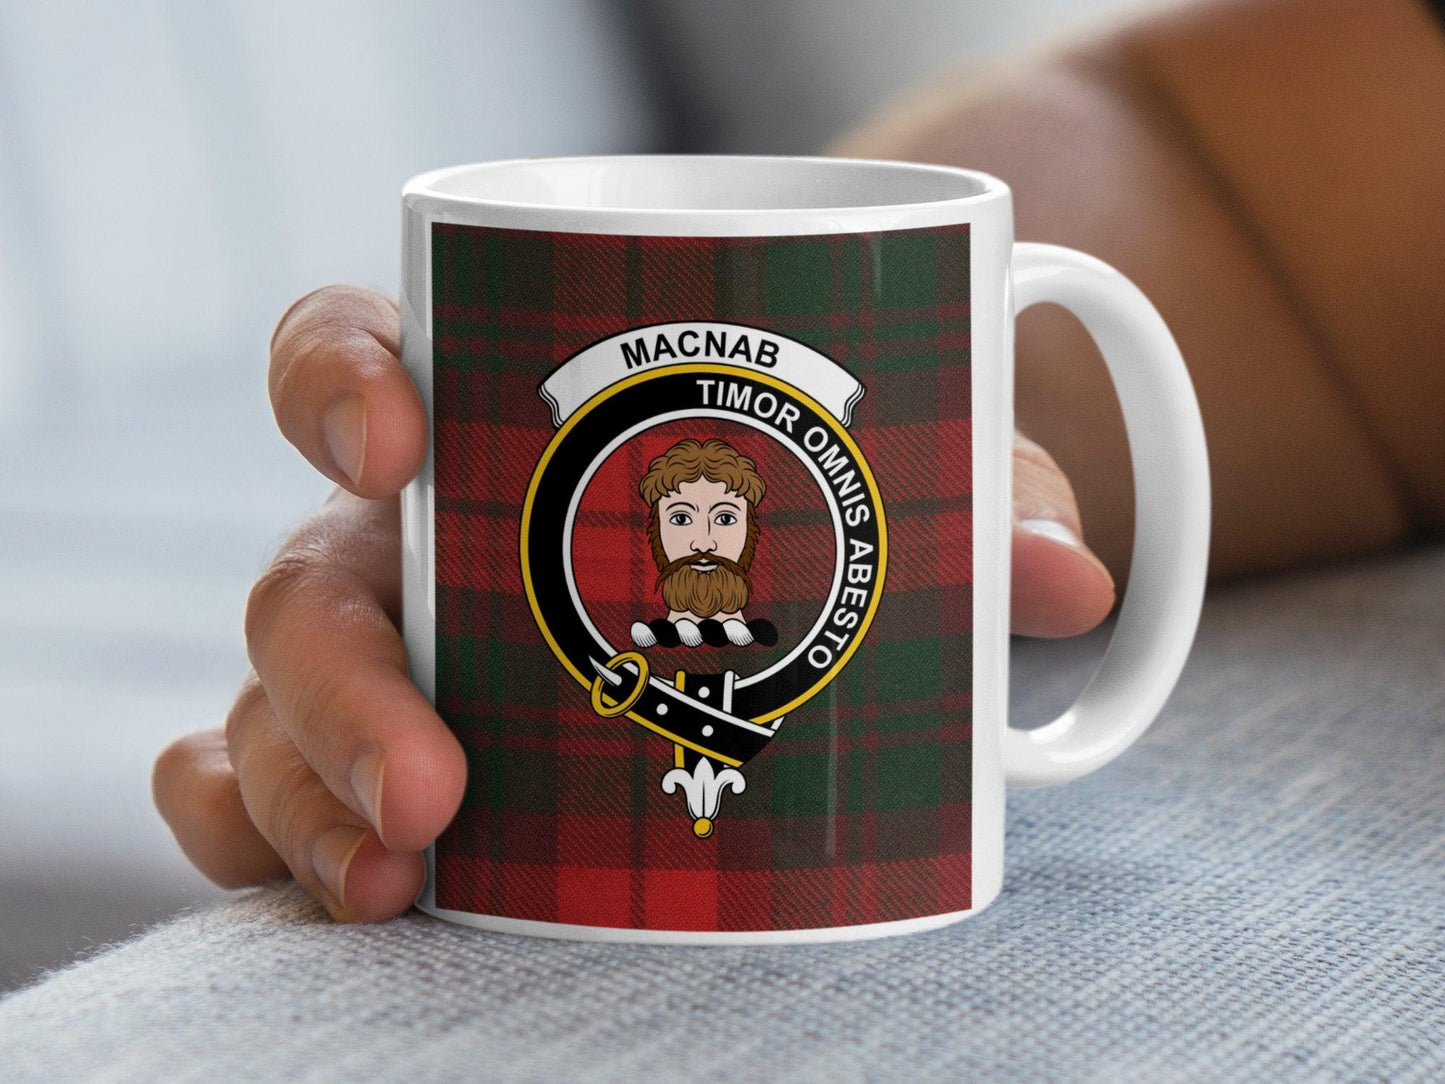 Macnab Clan Crest Tartan Scottish Clan Heritage Mug - Living Stone Gifts